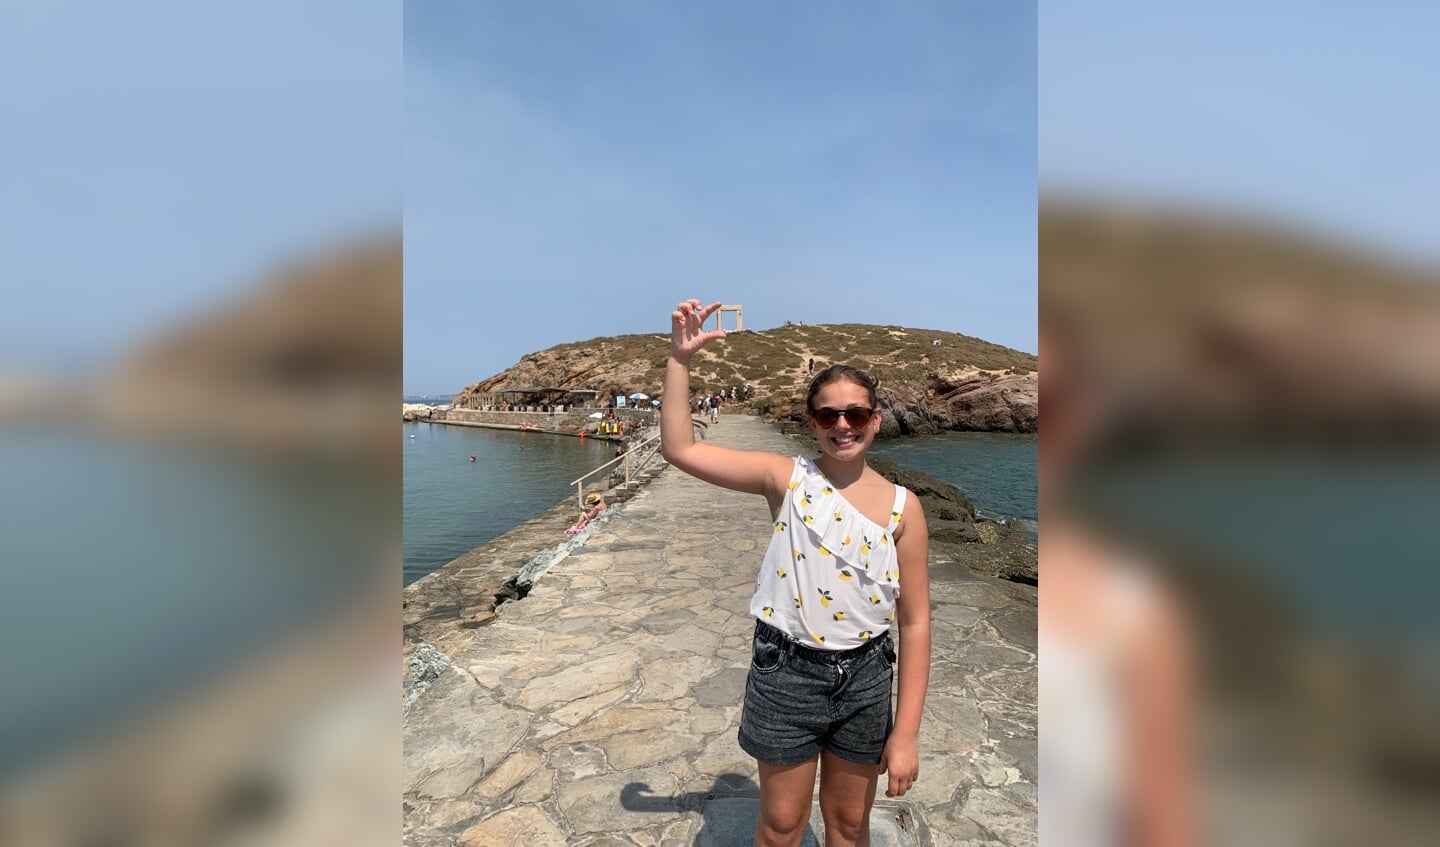 ,,Op de foto onze dochter Fleur van de Biezen tijdens onze vakantie in Griekenland op 4 augustus. De foto is gemaakt bij de Portara van Naxos (poort uit de oudheid) op het eiland Naxos.